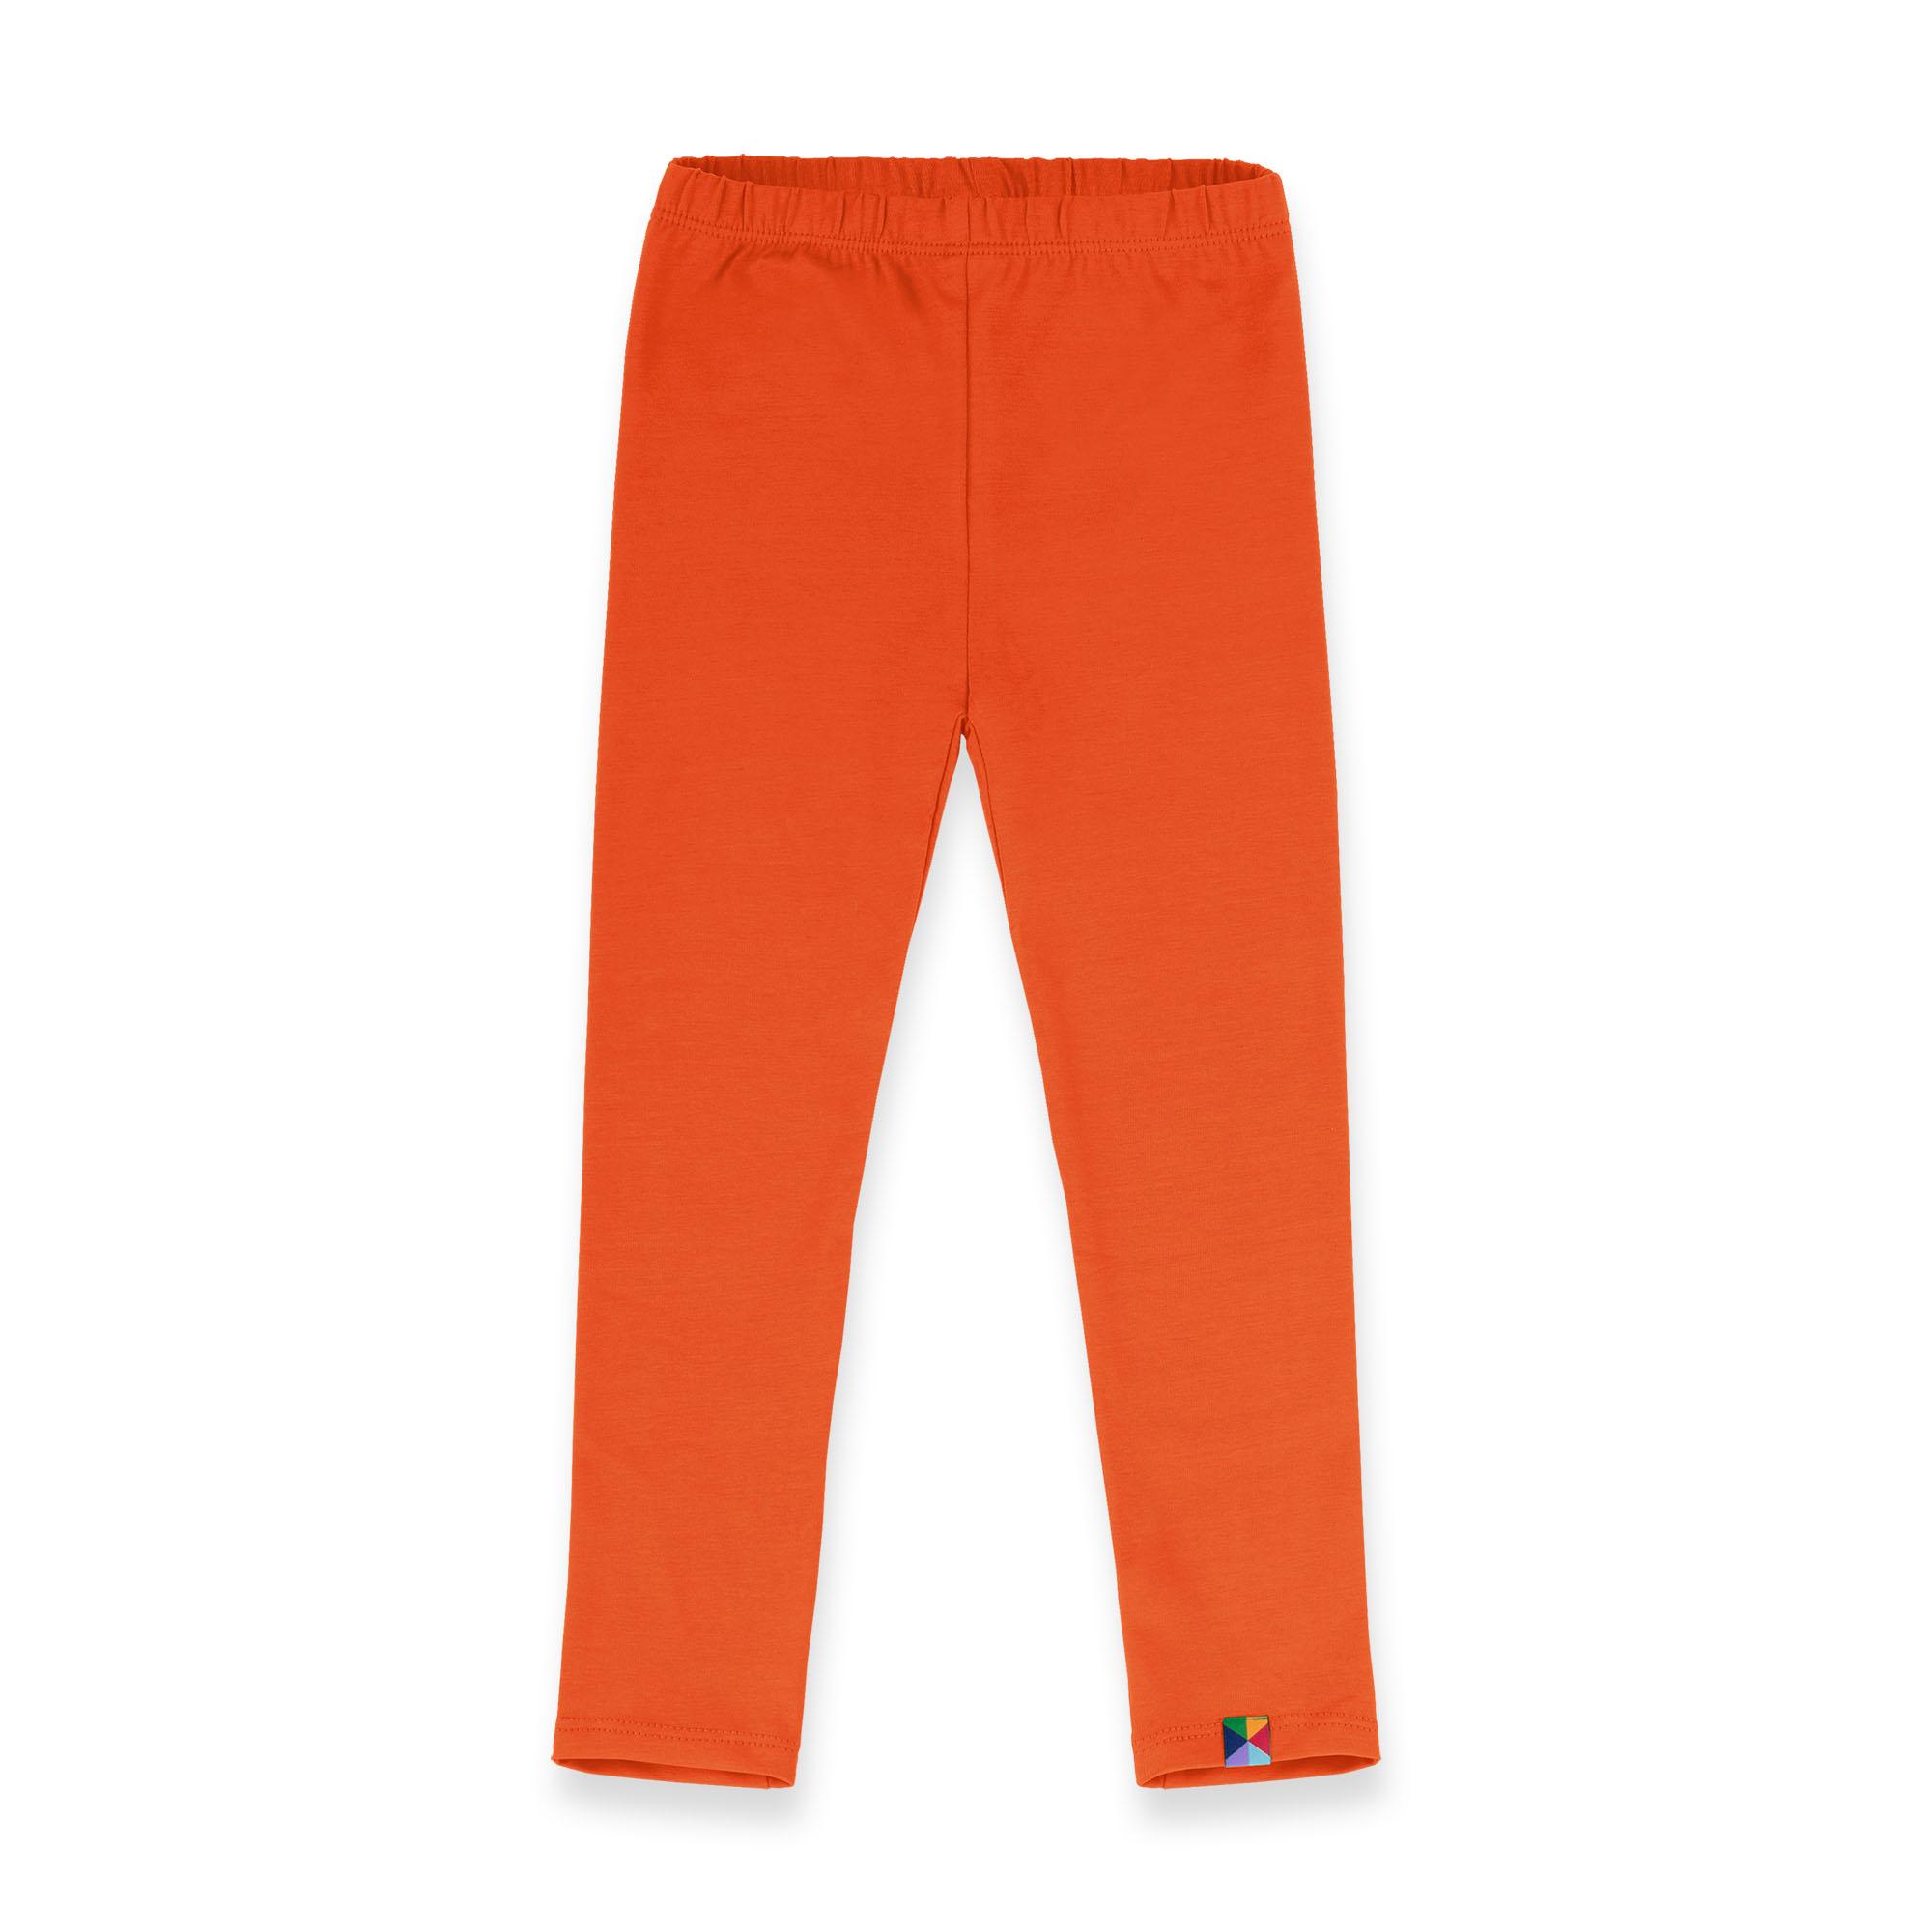 Pomarańczowe legginsy grubsze 